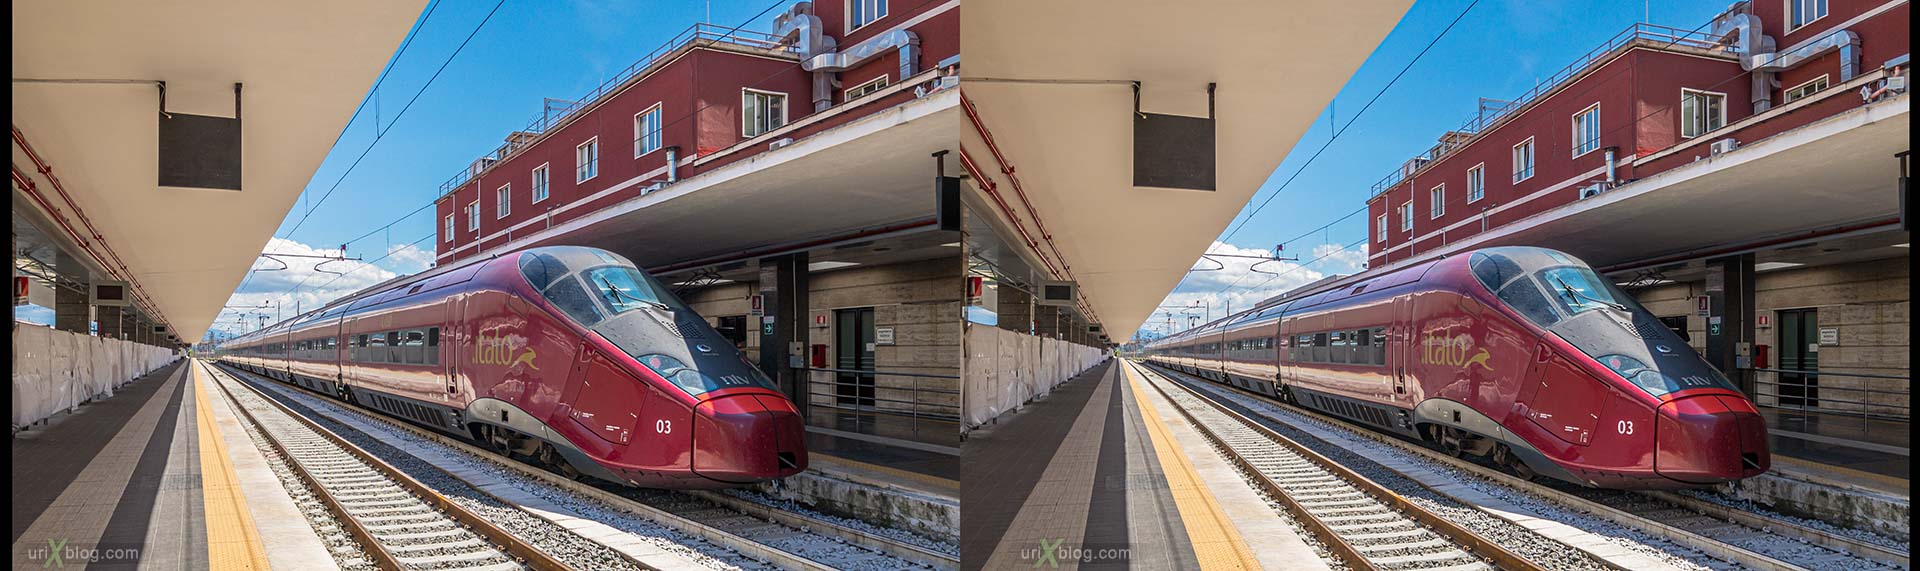 Napoli Centrale, Неаполь, жд вокзал, поезд, электровоз, Италия, 3D, перекрёстная стереопара, стерео, стереопара